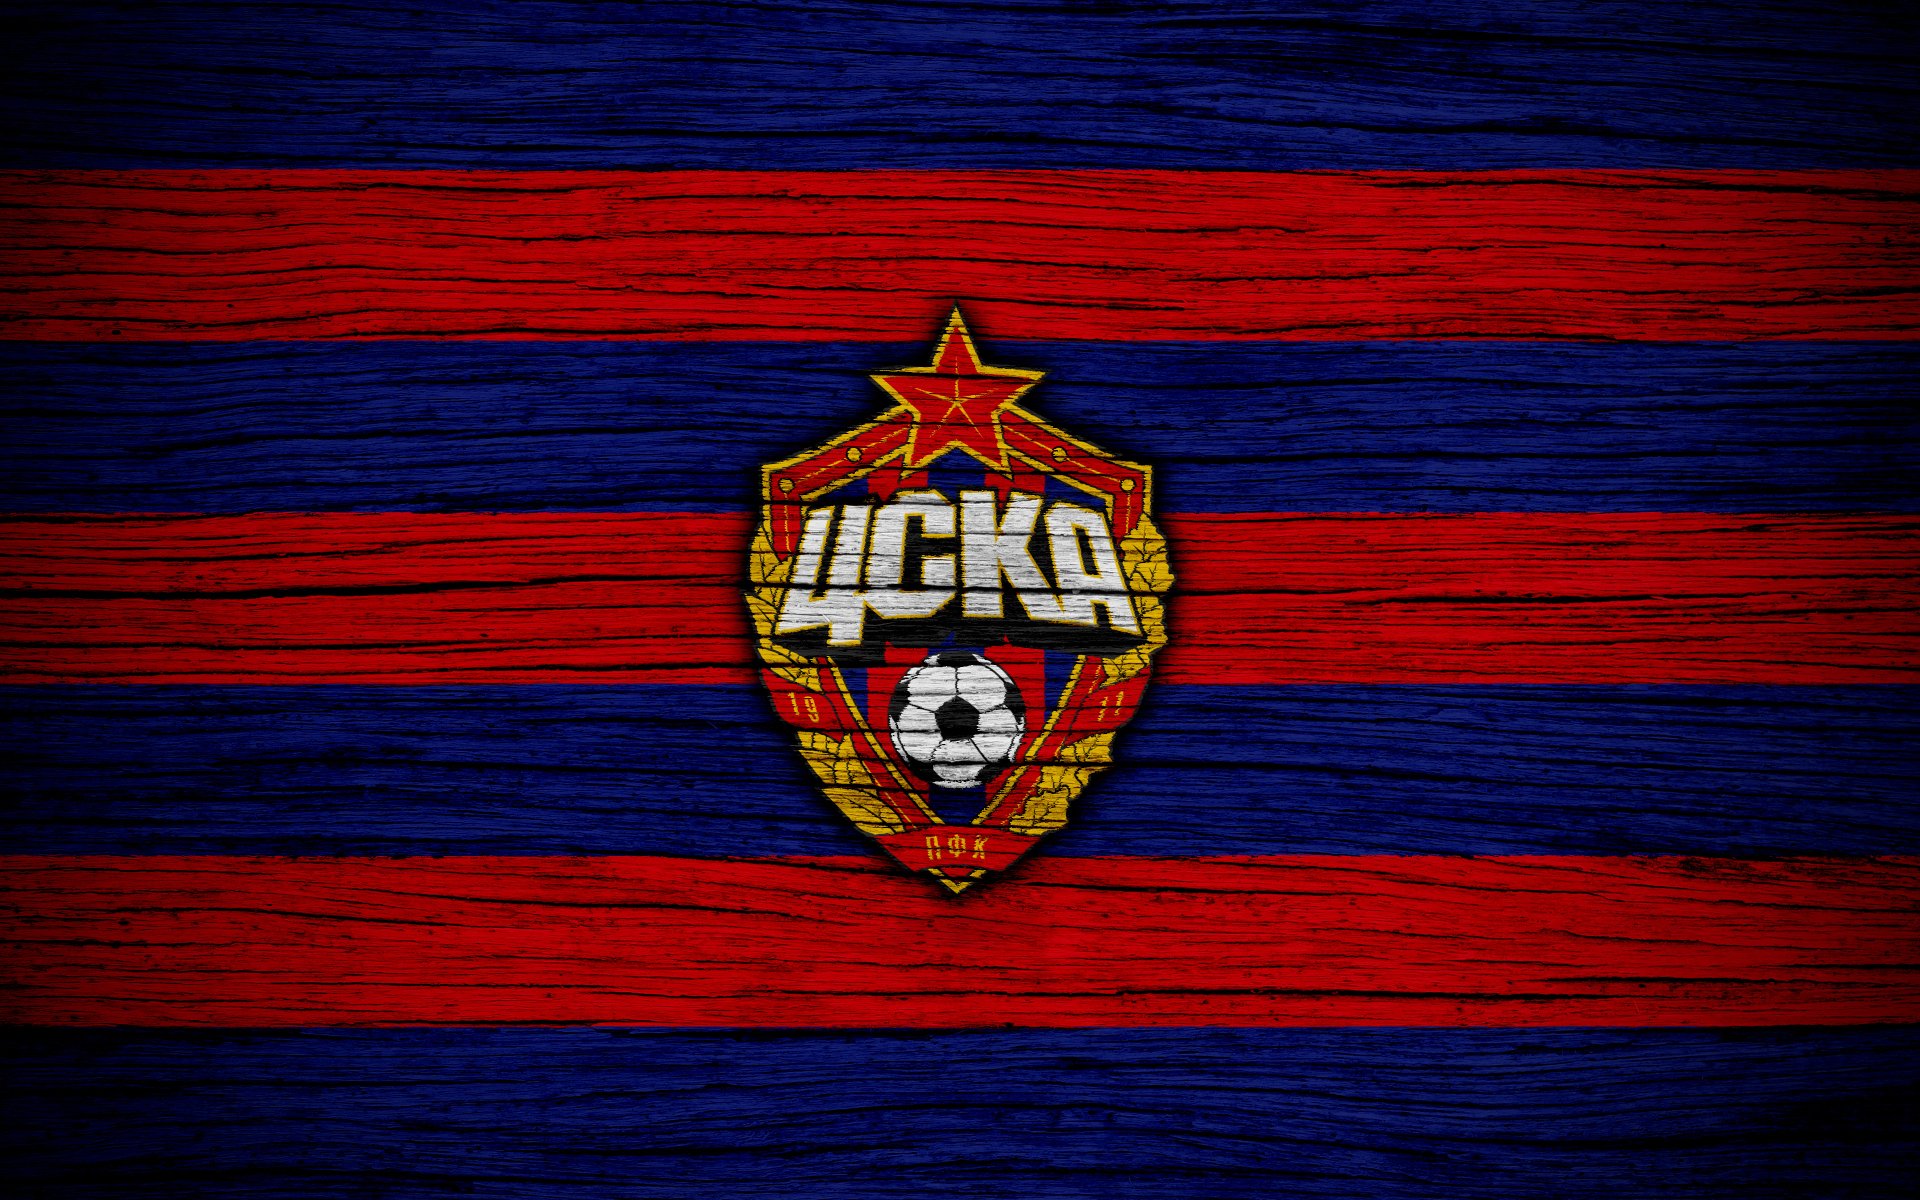 Cska Moscow Wallpaper / CSKA Moscow 3 - 0 Trabzonspor ...